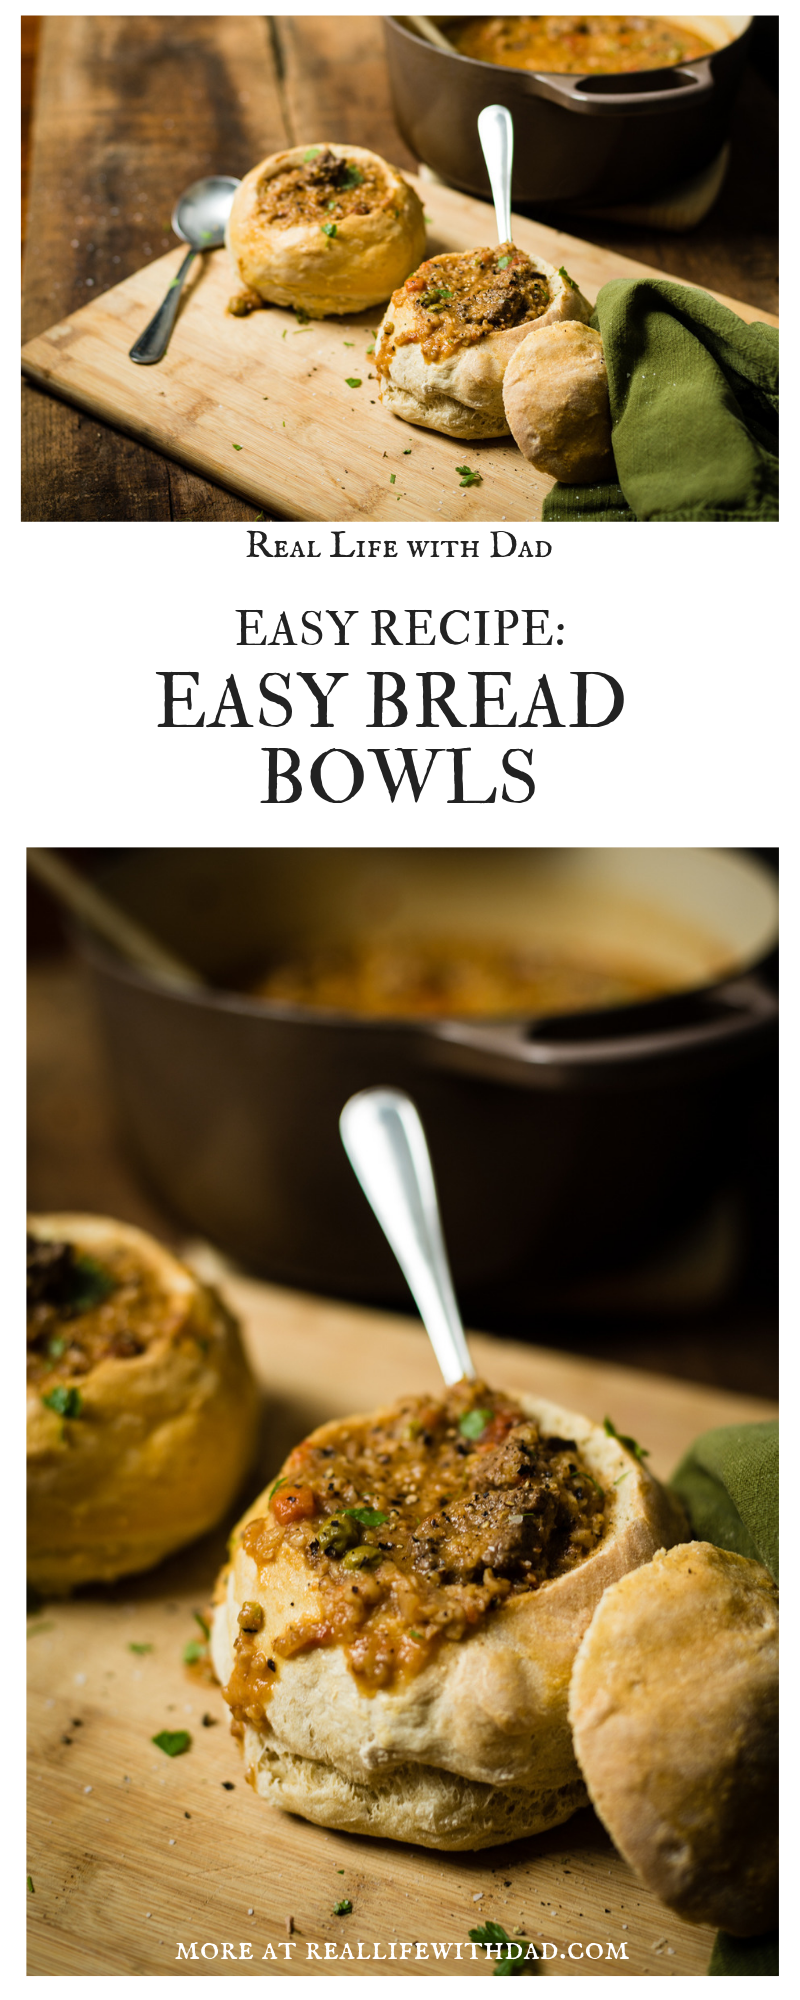 easy bread bowls | RealLifeWithDad.com